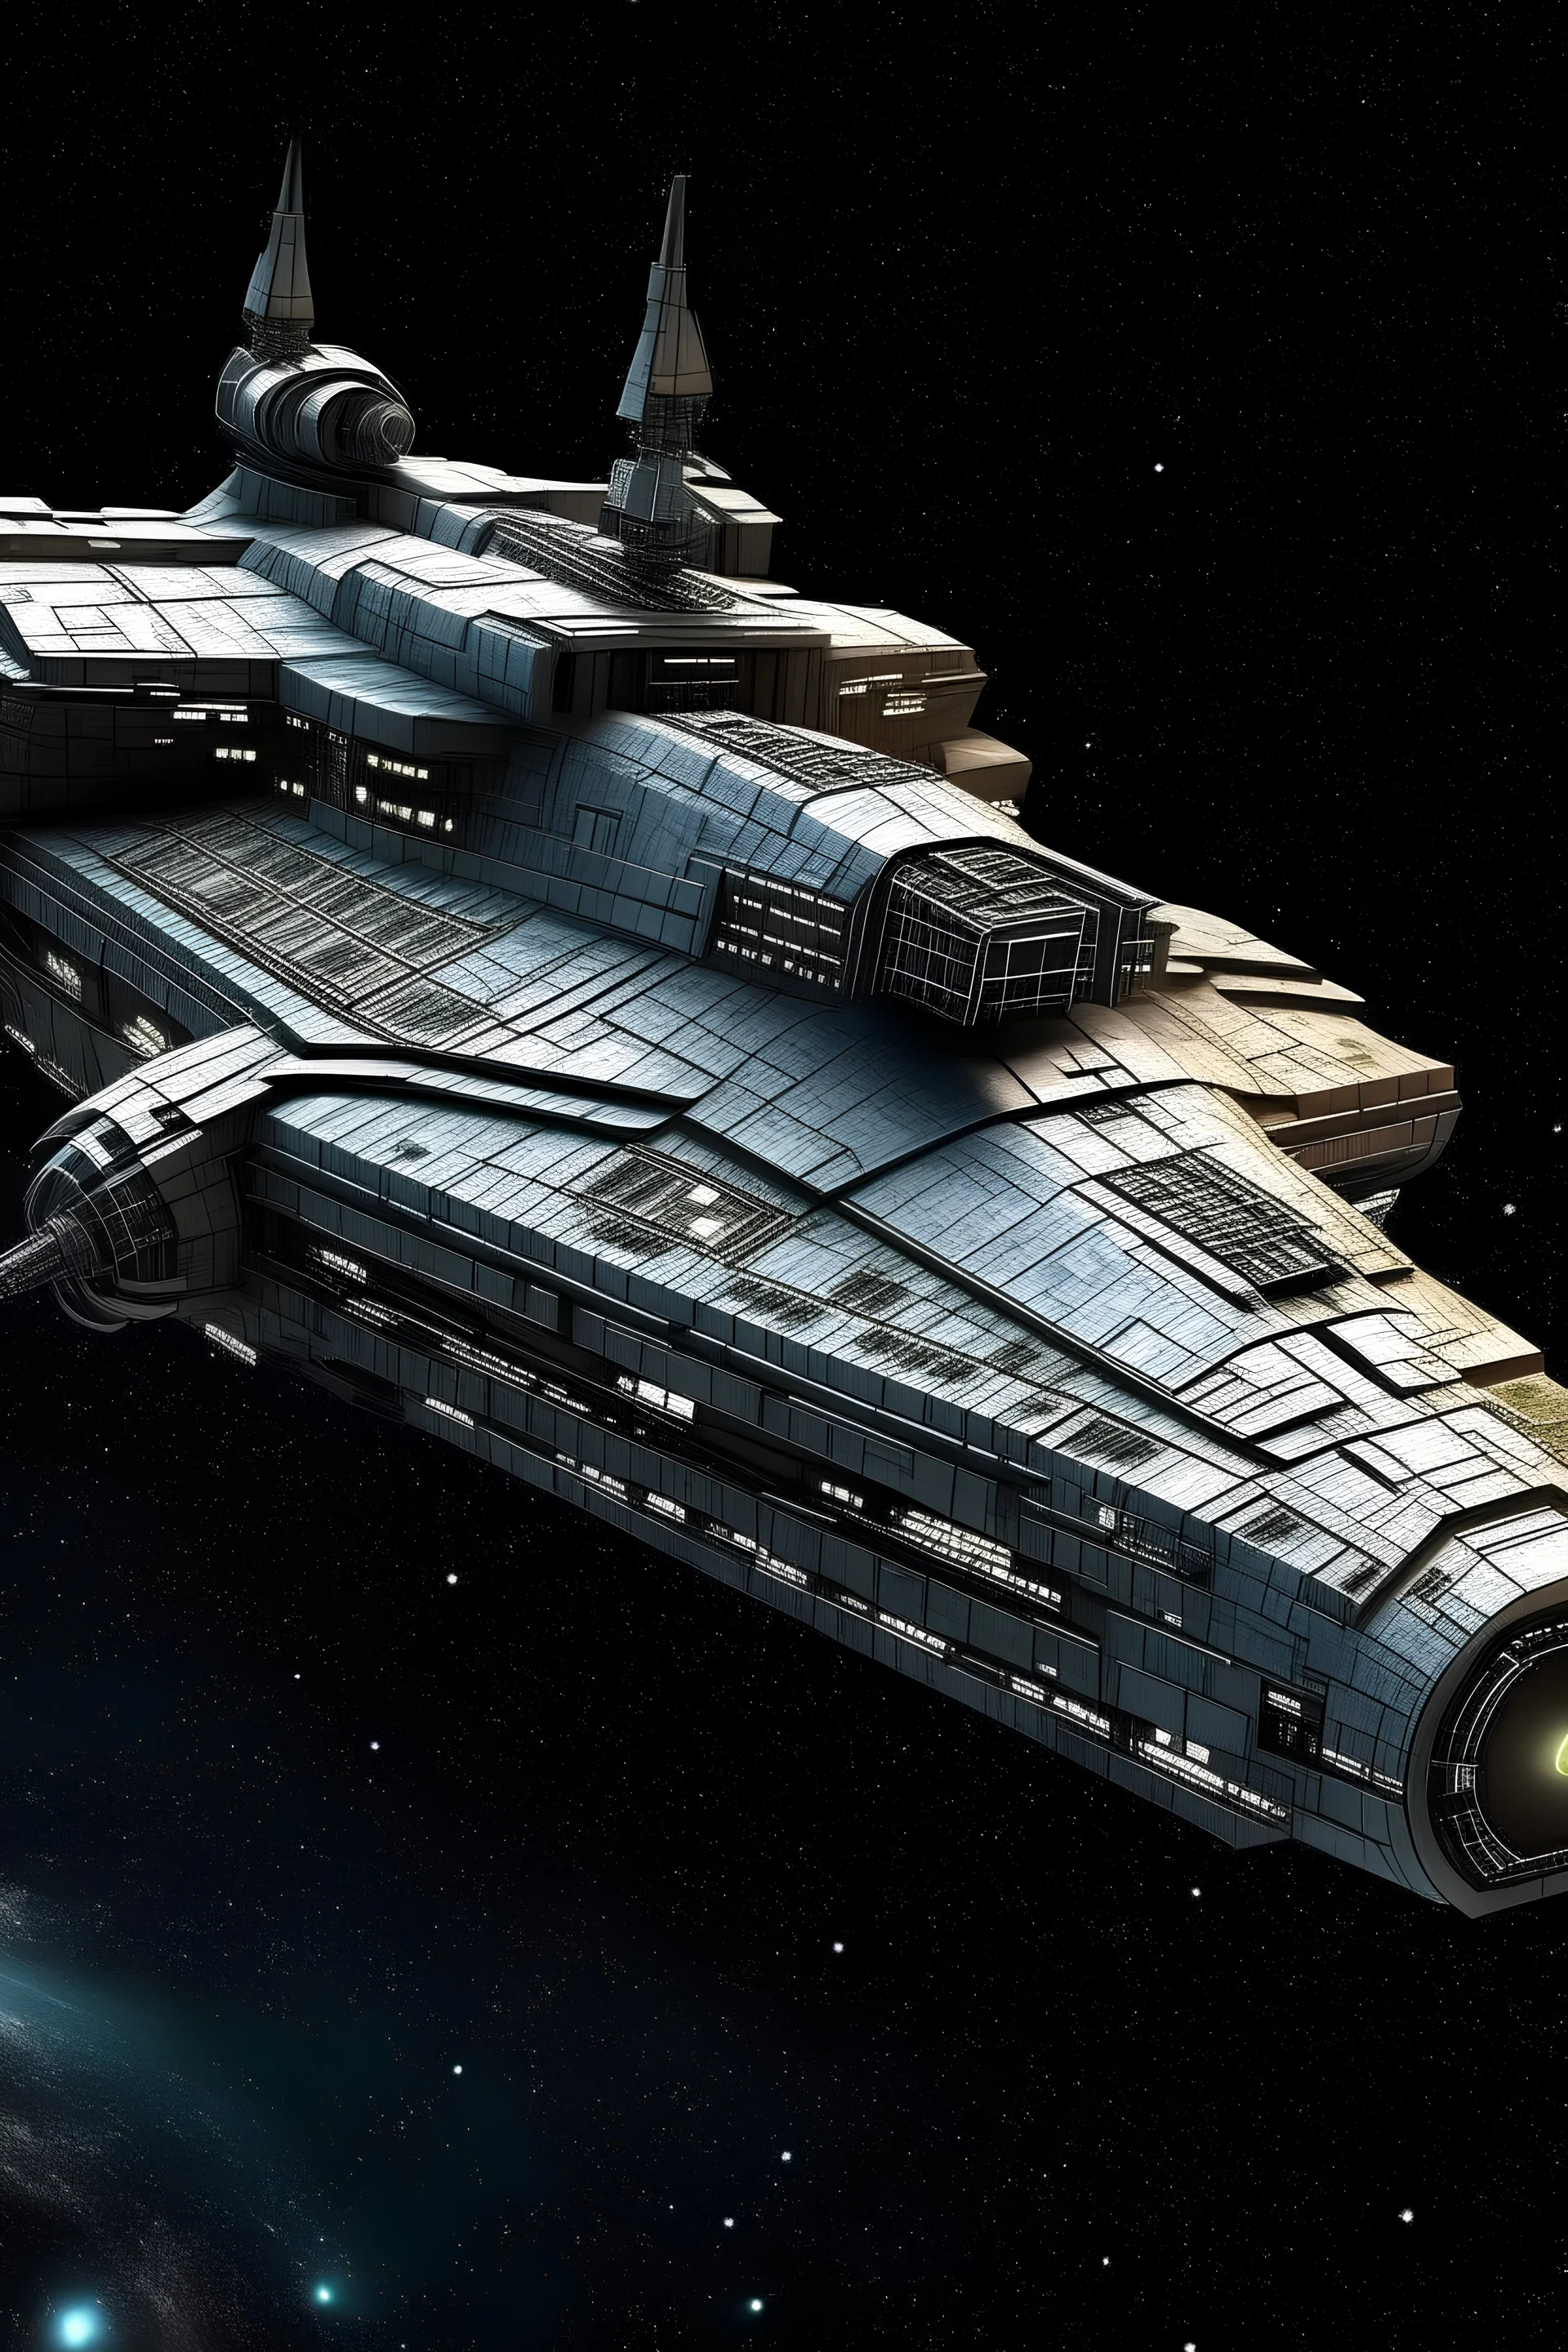 starfield ship, star wars or startrek design